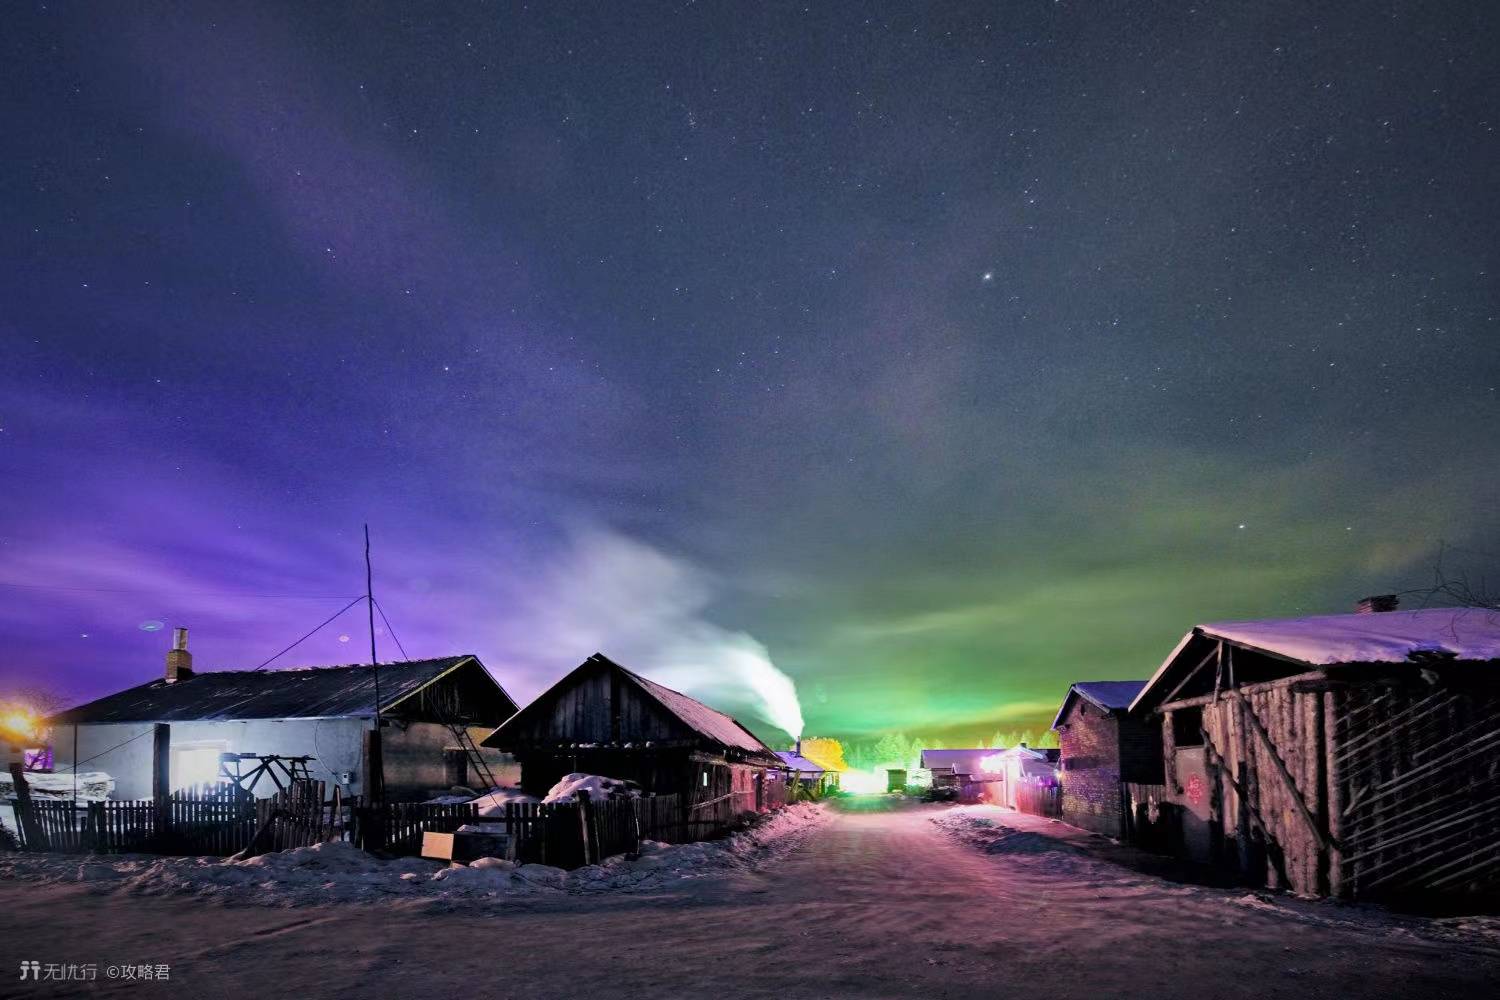 份,此时不仅有一年一度的夏至节,还有机会在当地的北极村见到极光